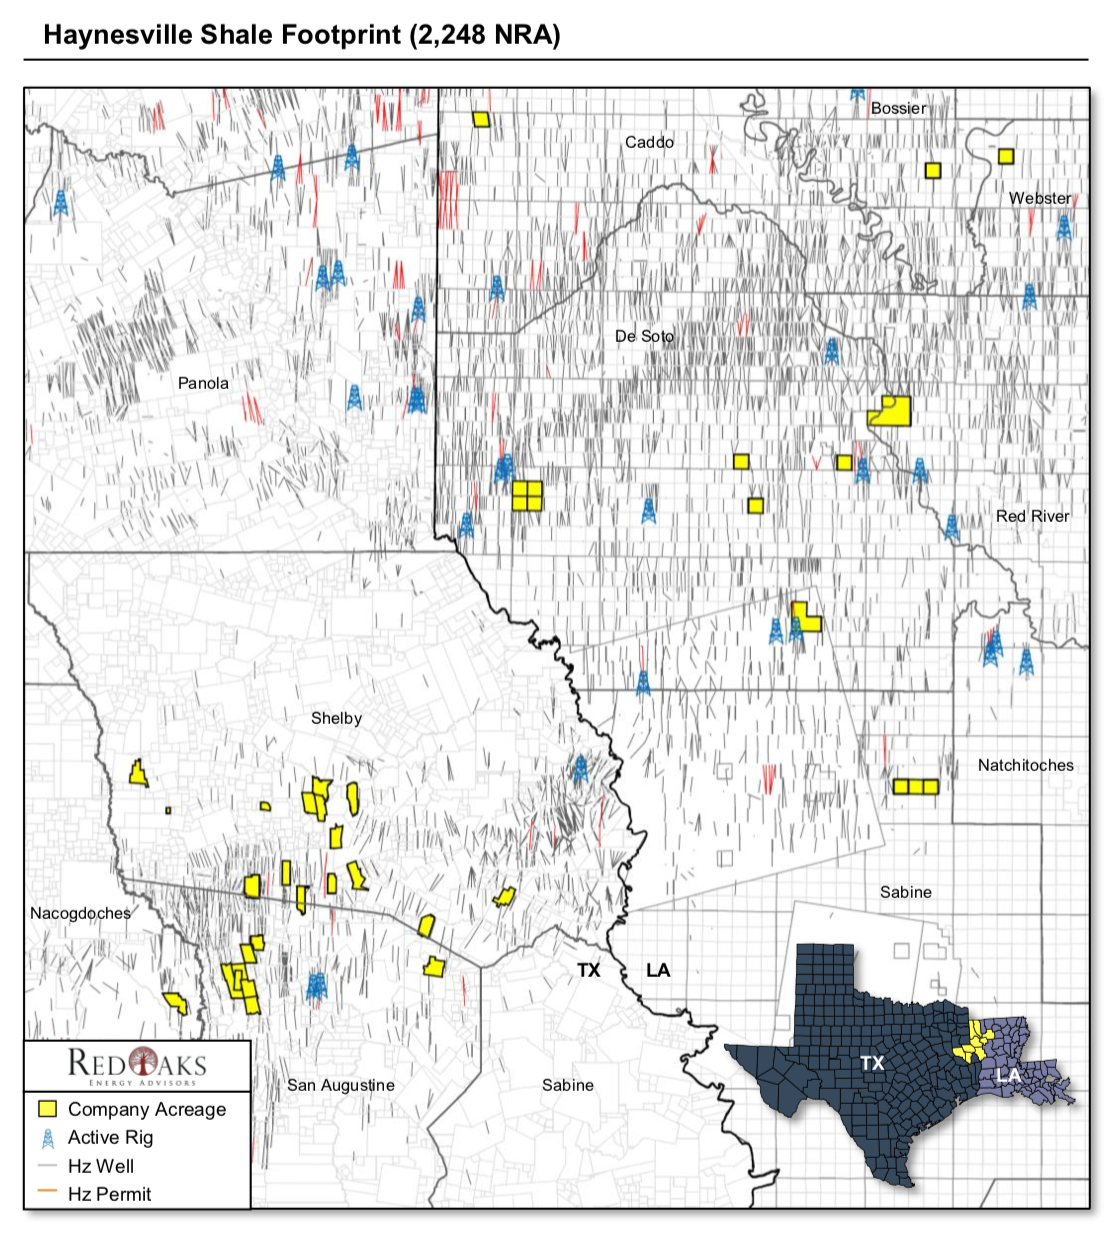 Marketed: Haynesville Mineral Position in Texas, Louisiana